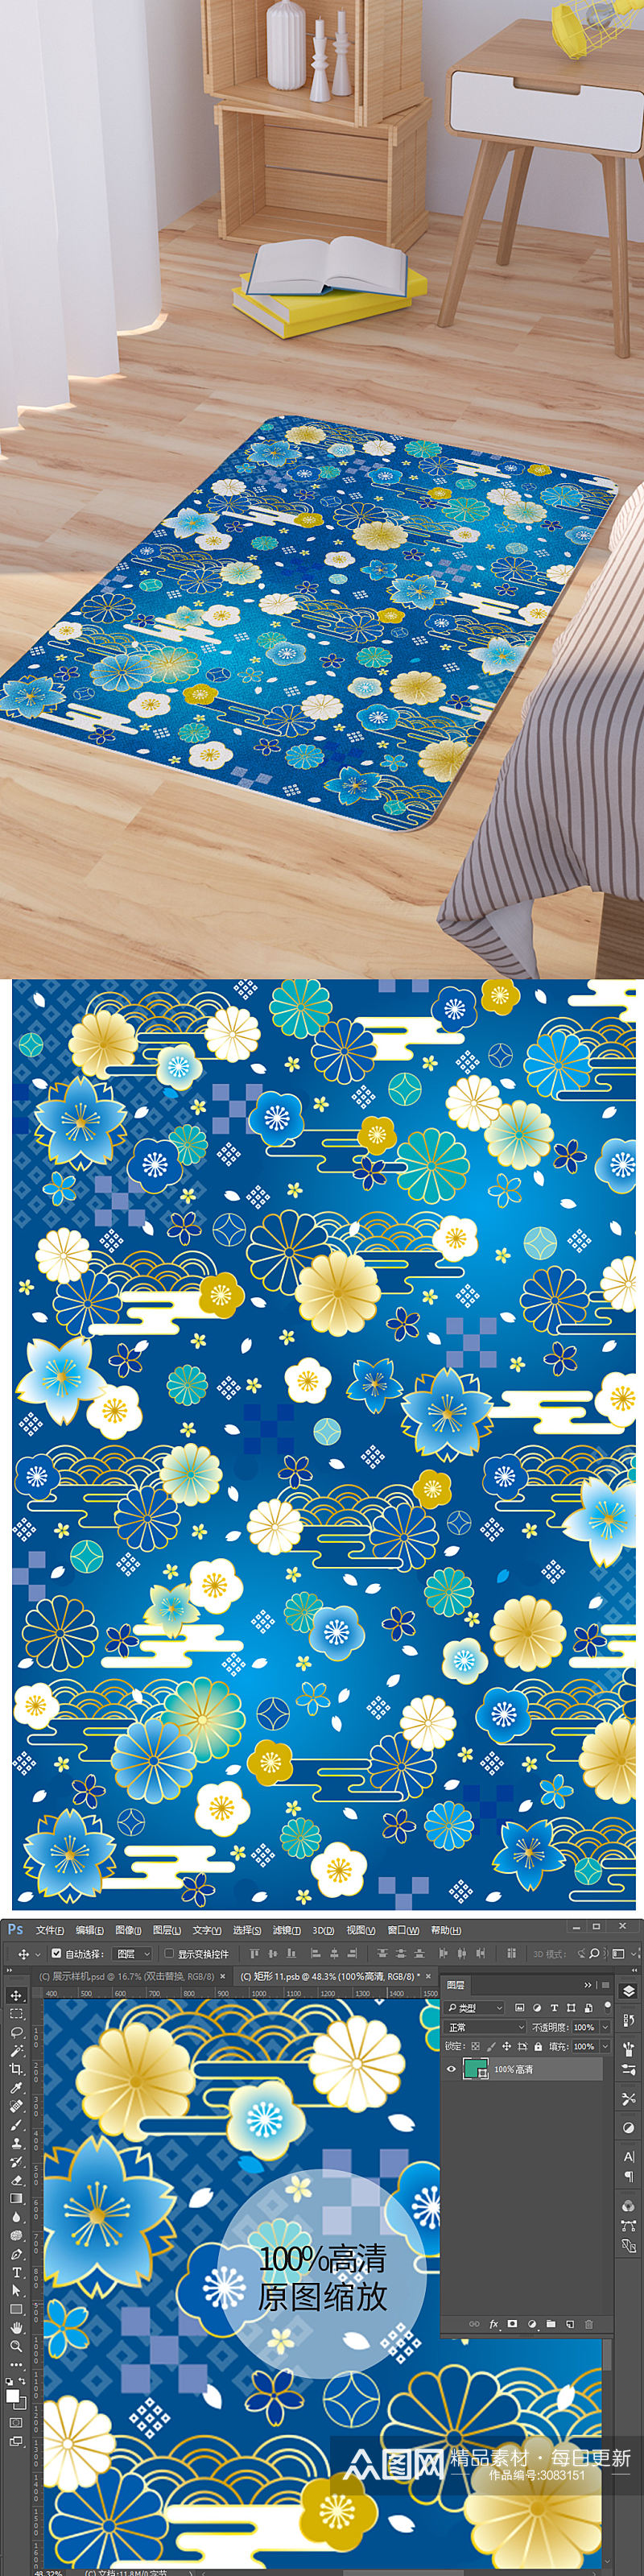 矢量蓝色樱花卡通可爱脚垫地毯图案素材